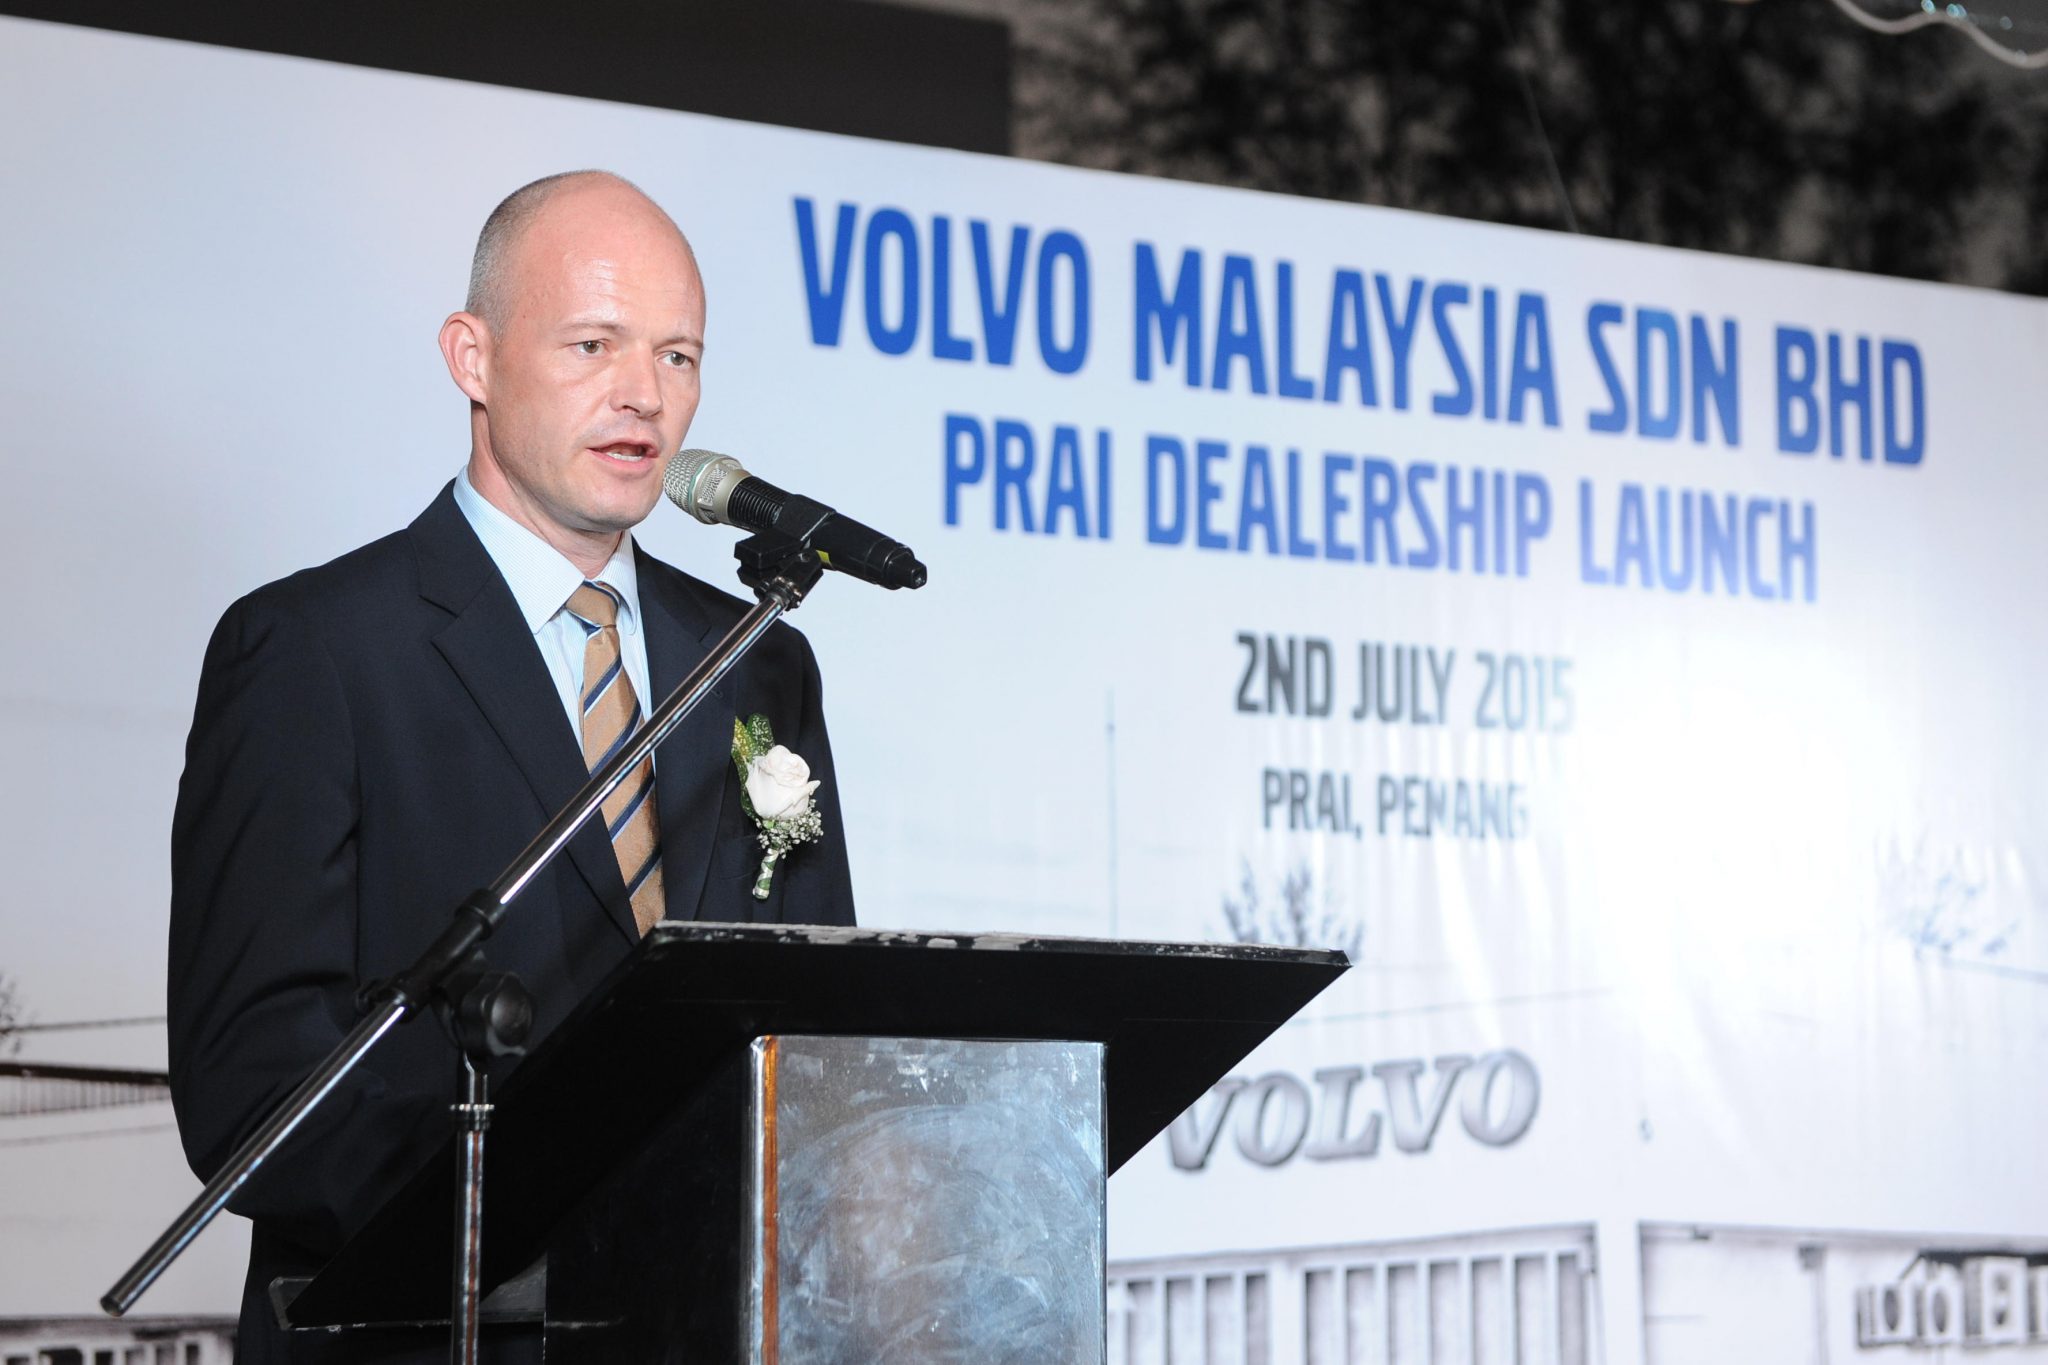 Volvo_Prai_Dealership_Opening_2015 (4)